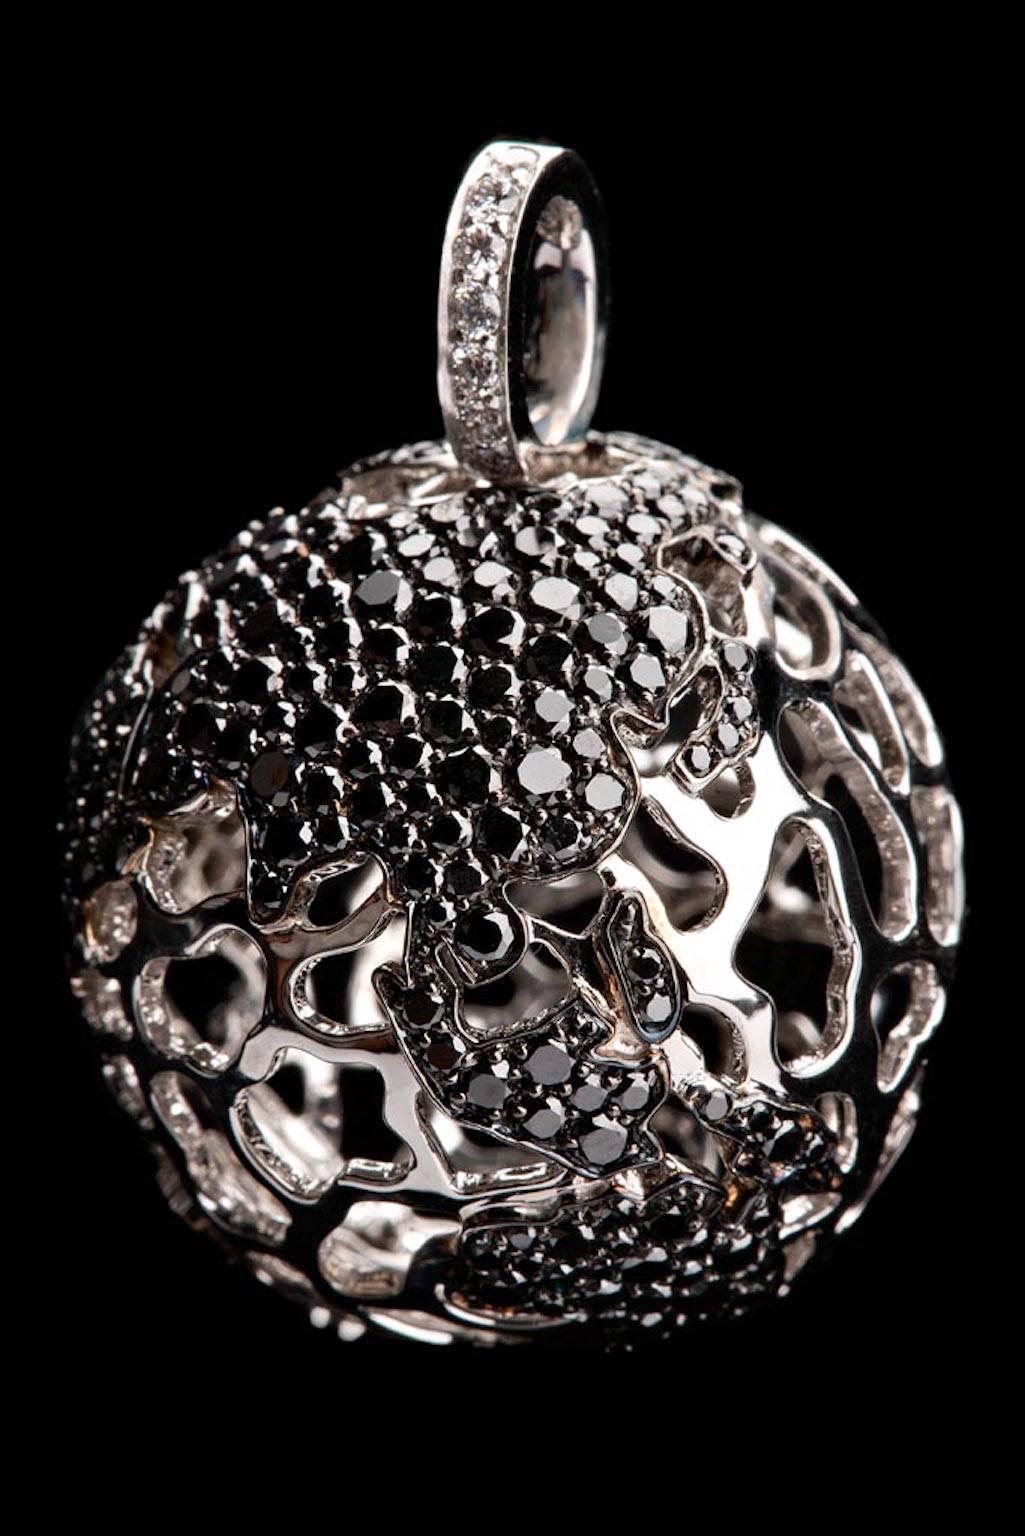 Impressive world globe pendant in white 18 carat gold with black diamond continents and one white diamond over Dallas, Tx.